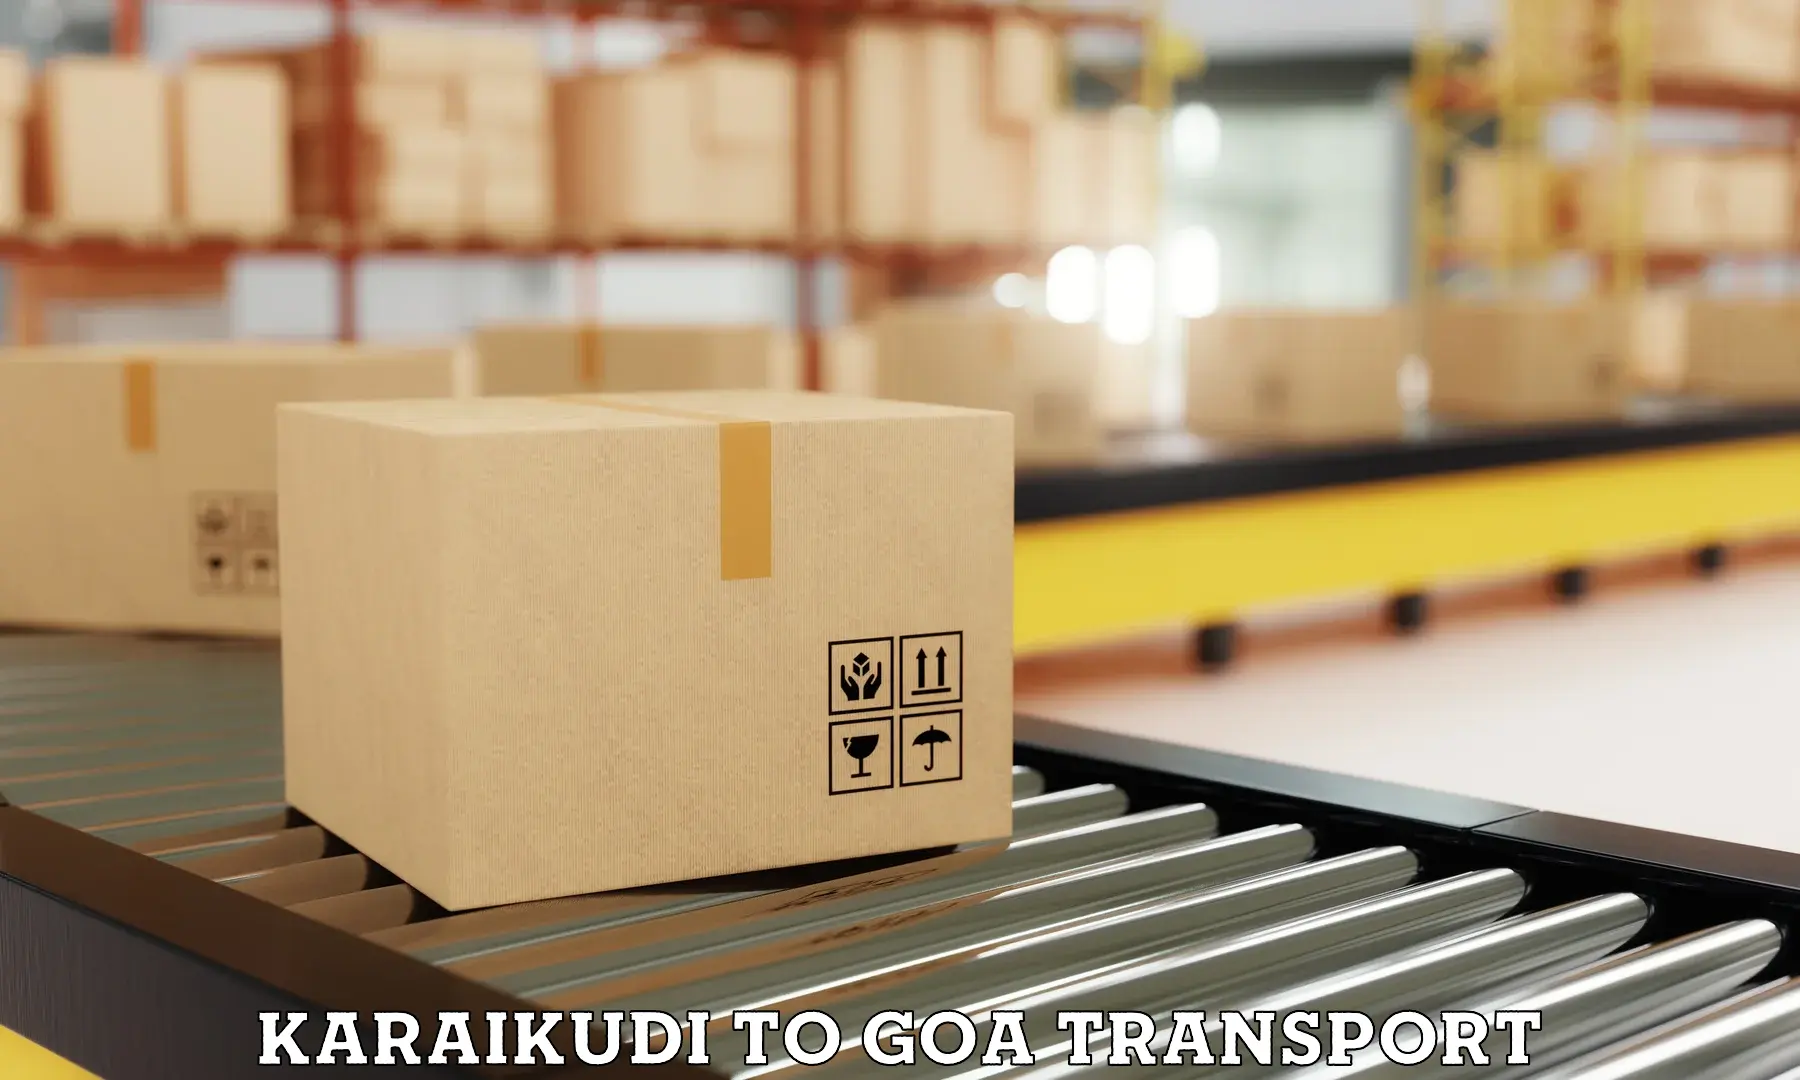 Online transport booking Karaikudi to IIT Goa